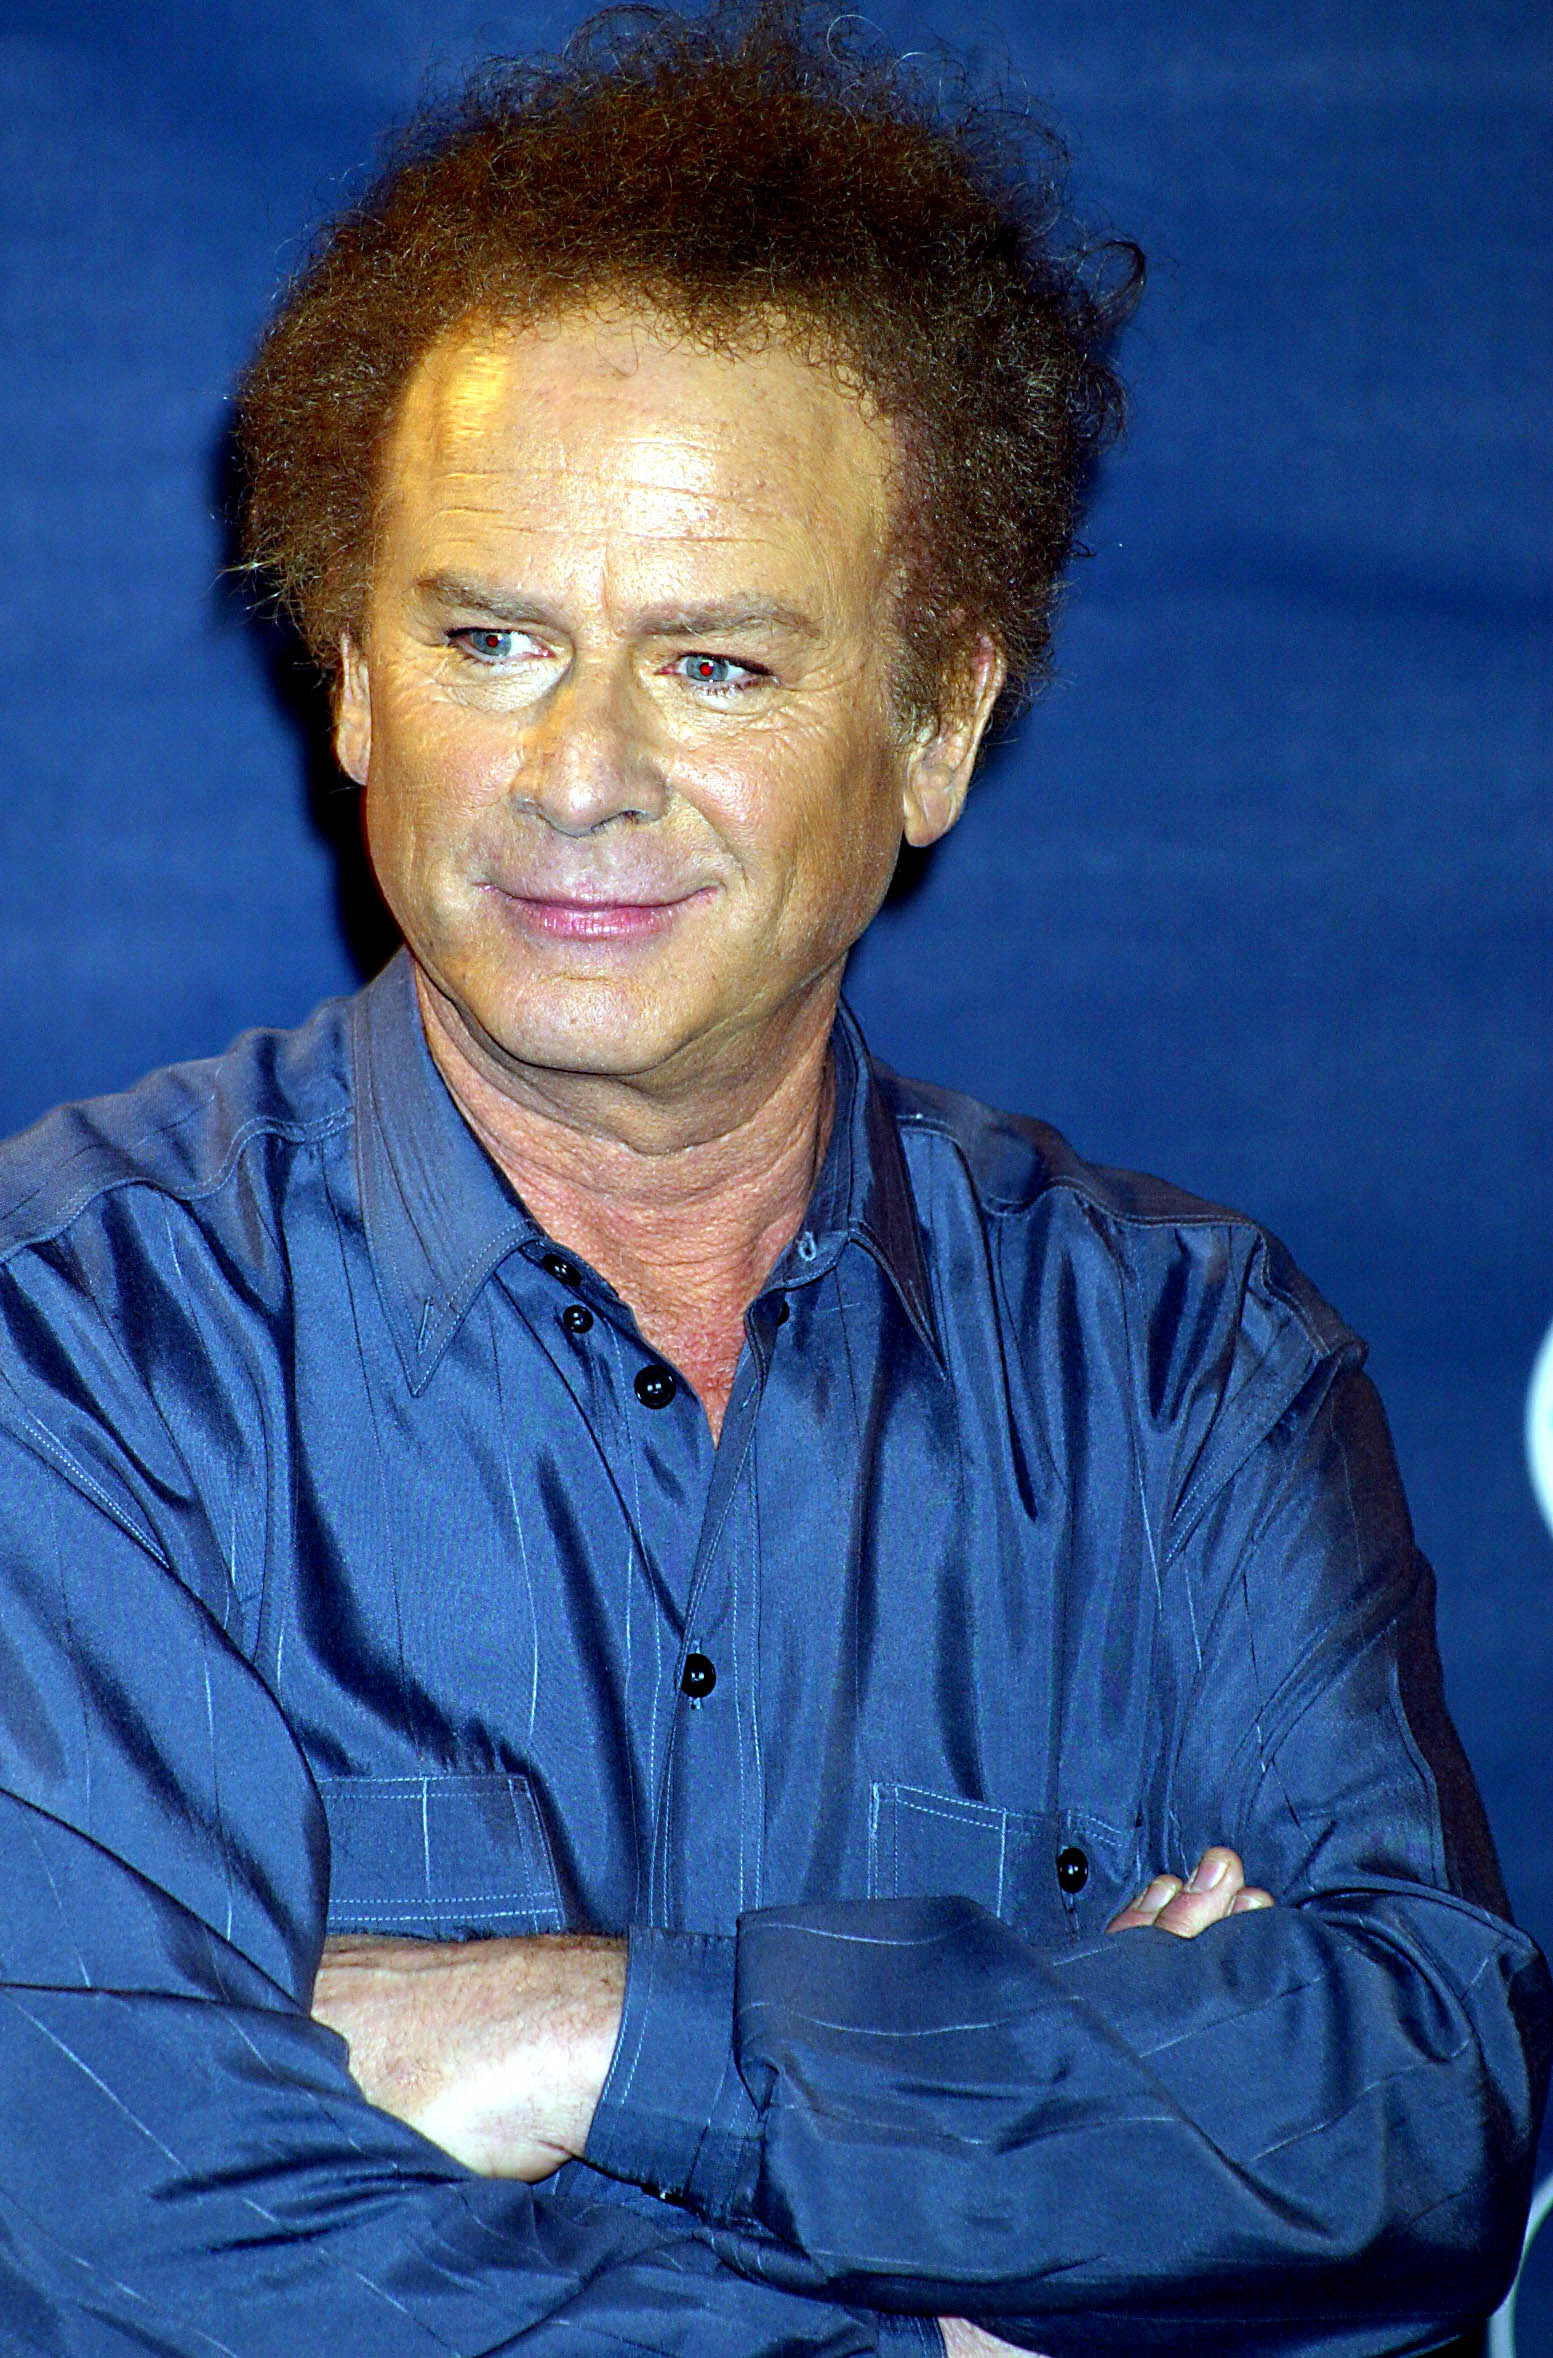 Art Garfunkel's Friend Says Singer Helped Him Overcome Despair